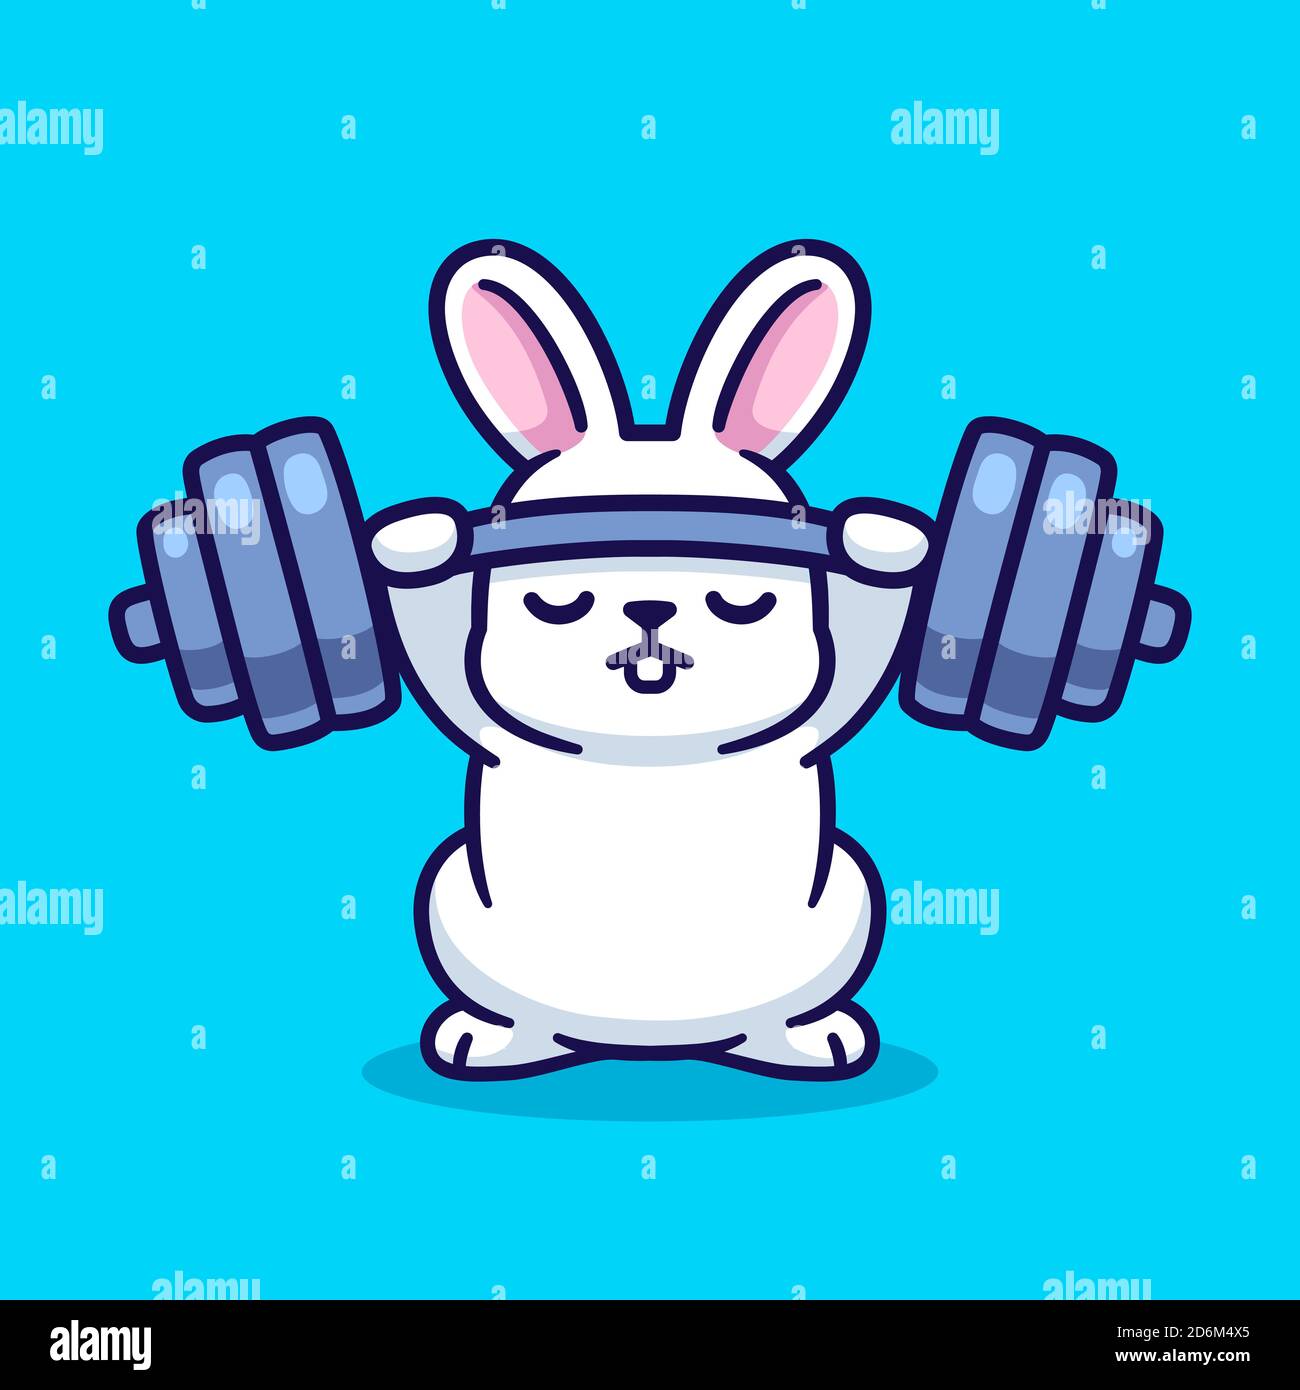 Gym coniglietto, carino cartone animato bianco coniglio sollevamento barbell. Disegno divertente di forma fisica e di esercitazione, illustrazione della clip art vettoriale. Illustrazione Vettoriale